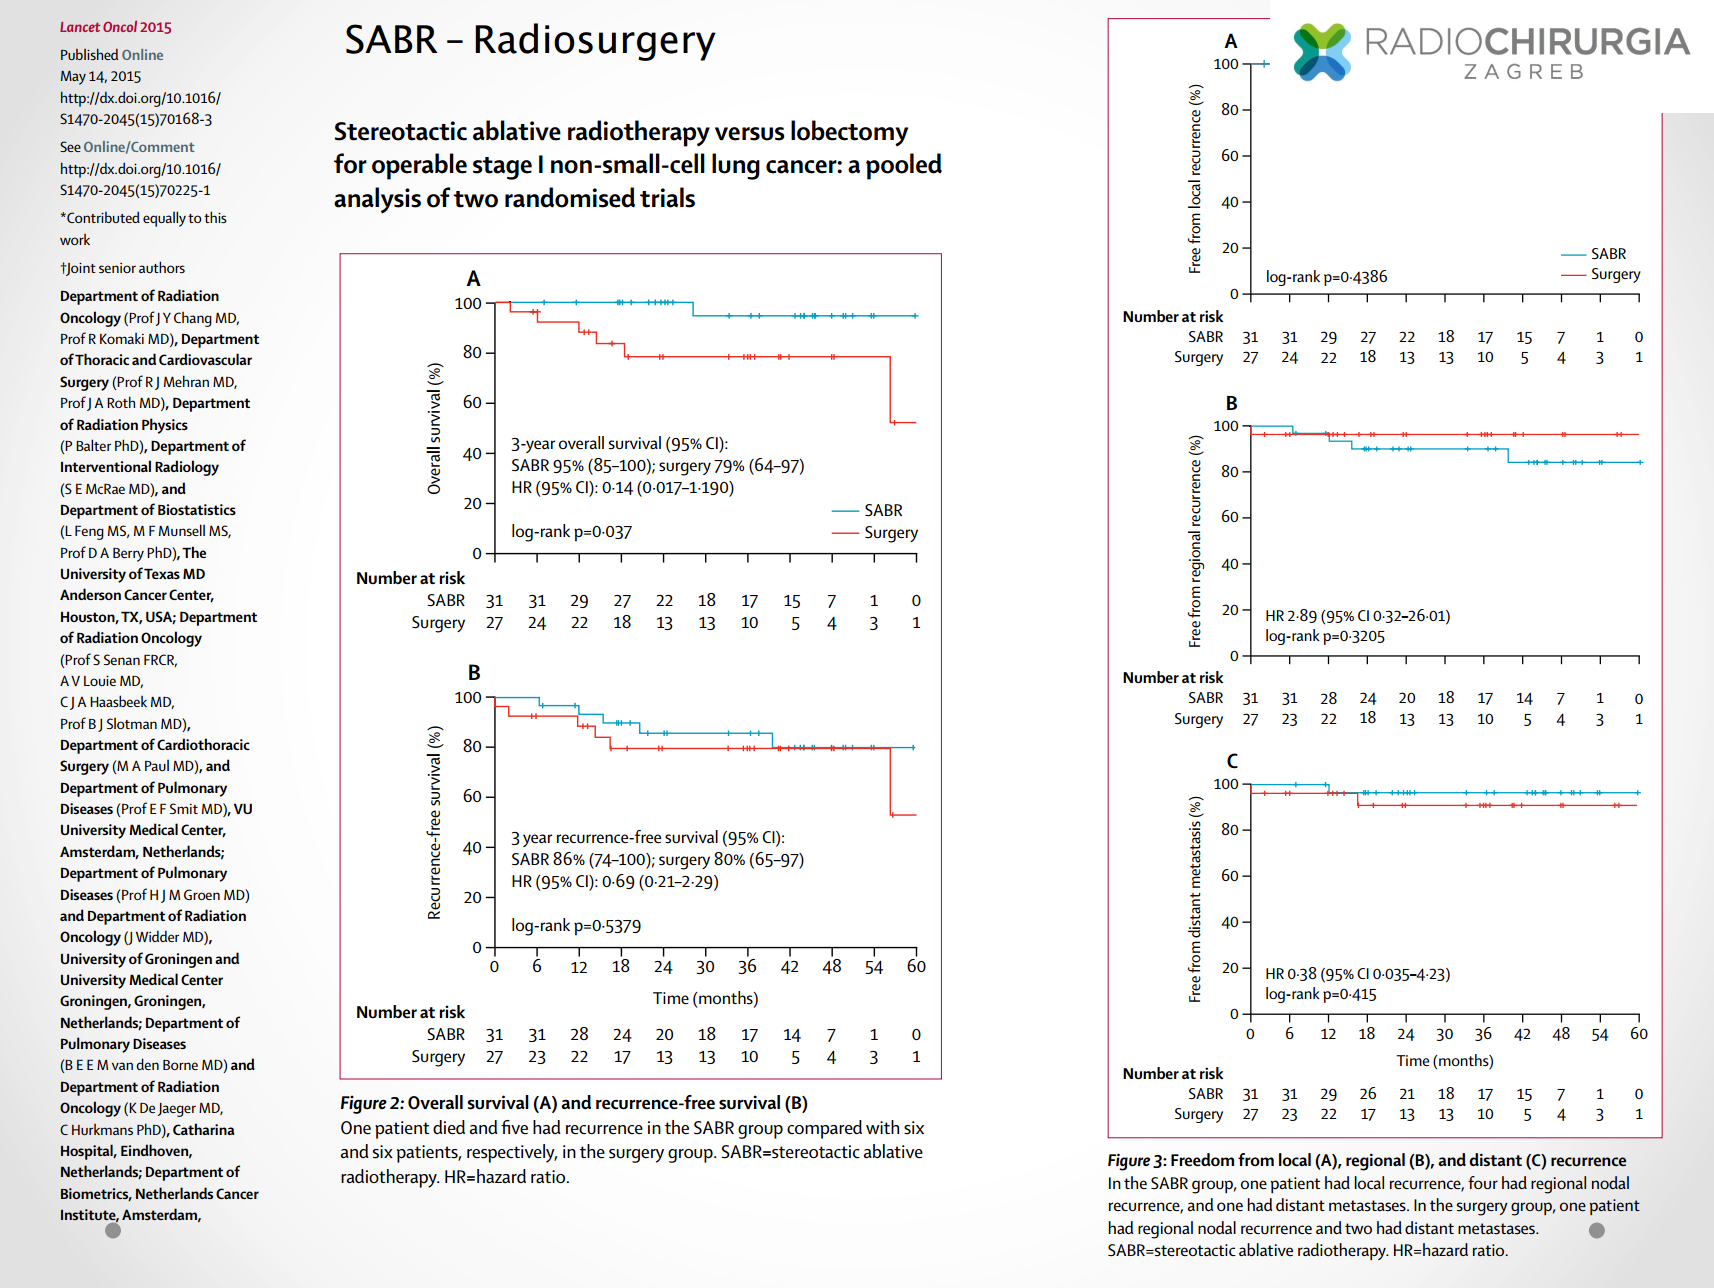 Usporedba radiokirurgije i kirurgije kod operabilnih karcinoma pluća